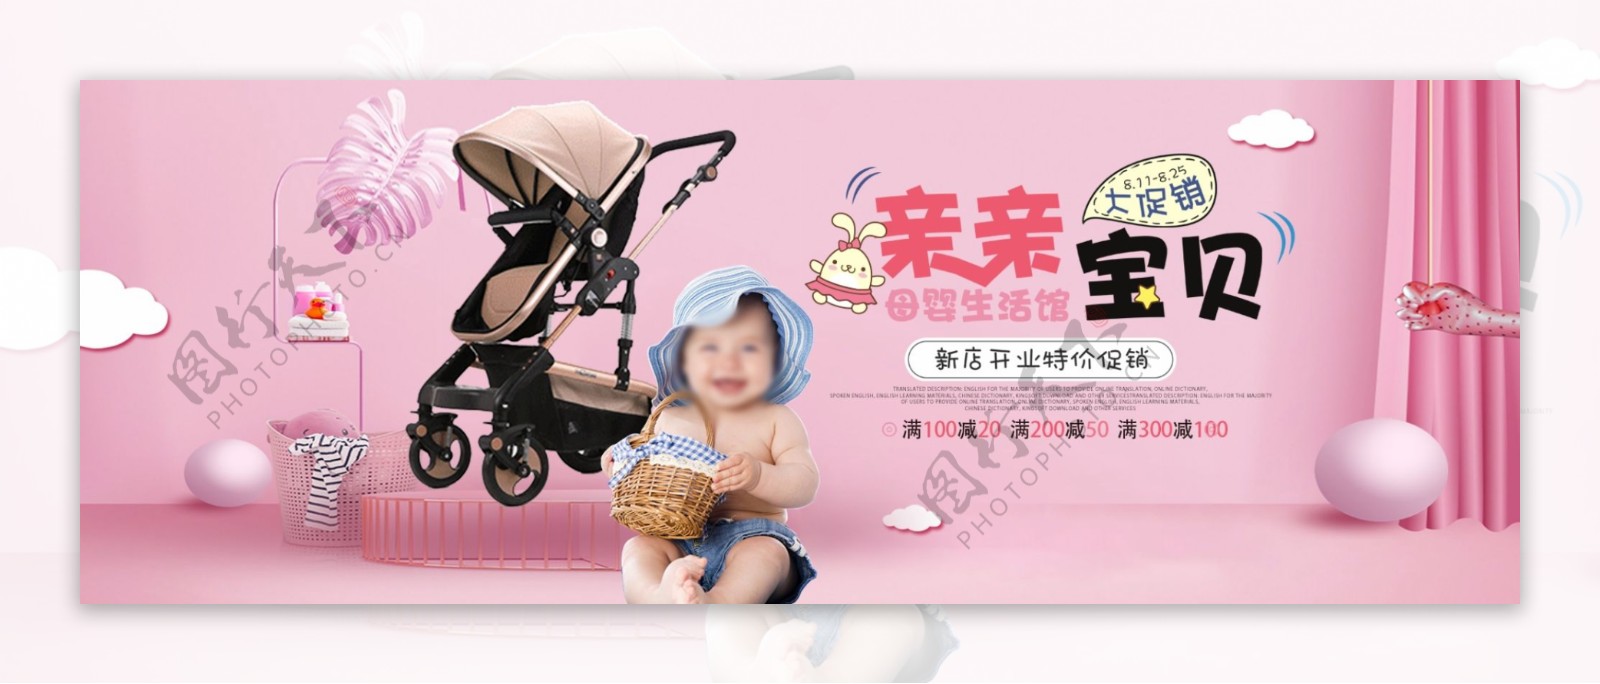 卡通母婴用品儿童日用品海报